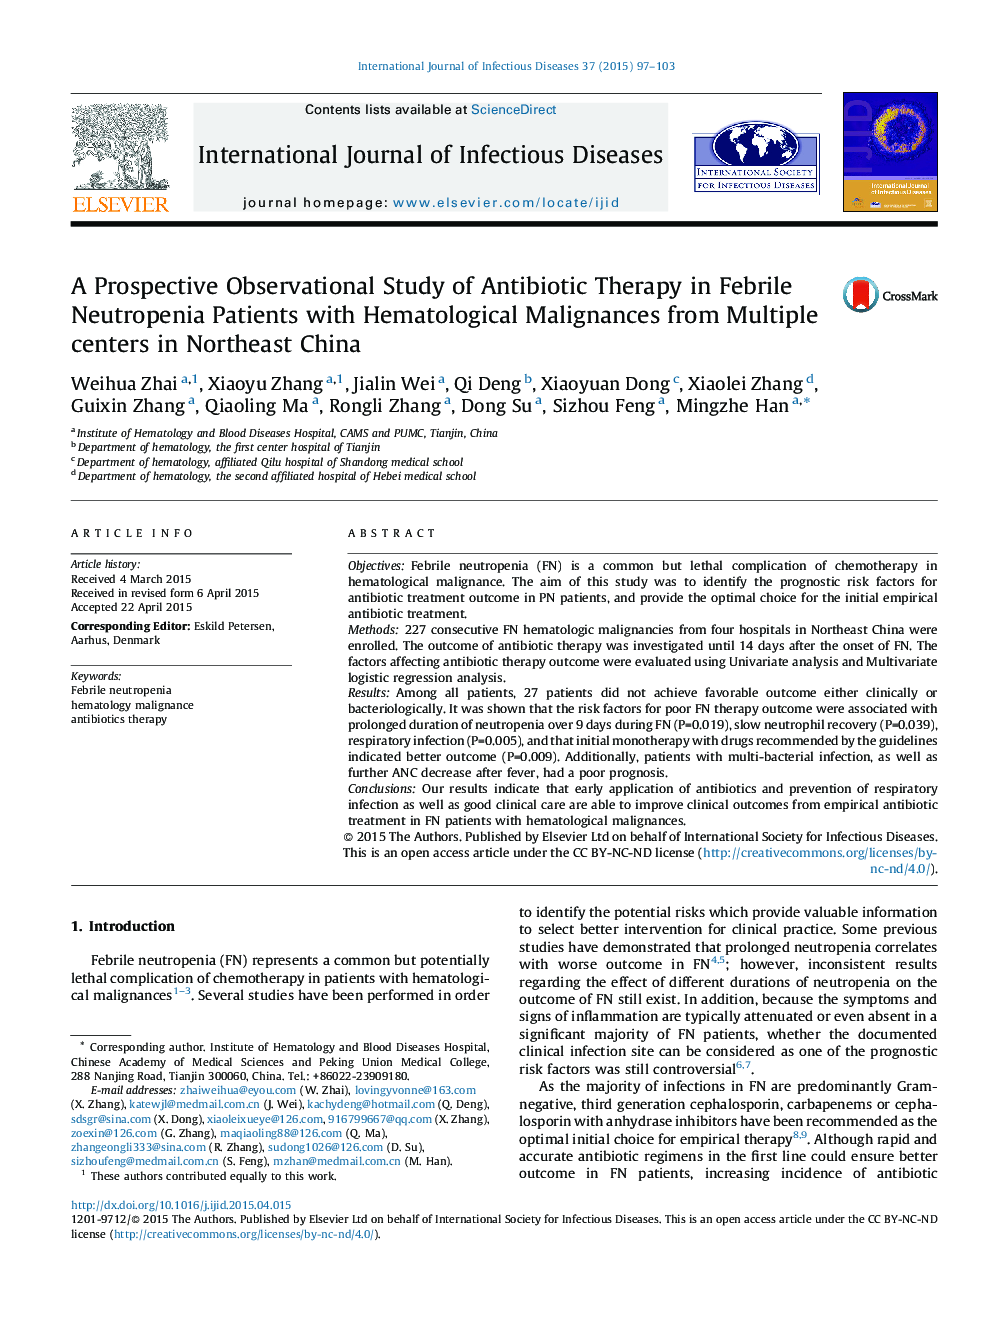 یک مطالعه بینابینی آینده ای از درمان آنتی بیوتیک در بیماران مبتلا به نوتروپنی تبخیر مبتلا به بدخیم های هماتولوژیک از مراکز متعدد در شمال شرقی چین 